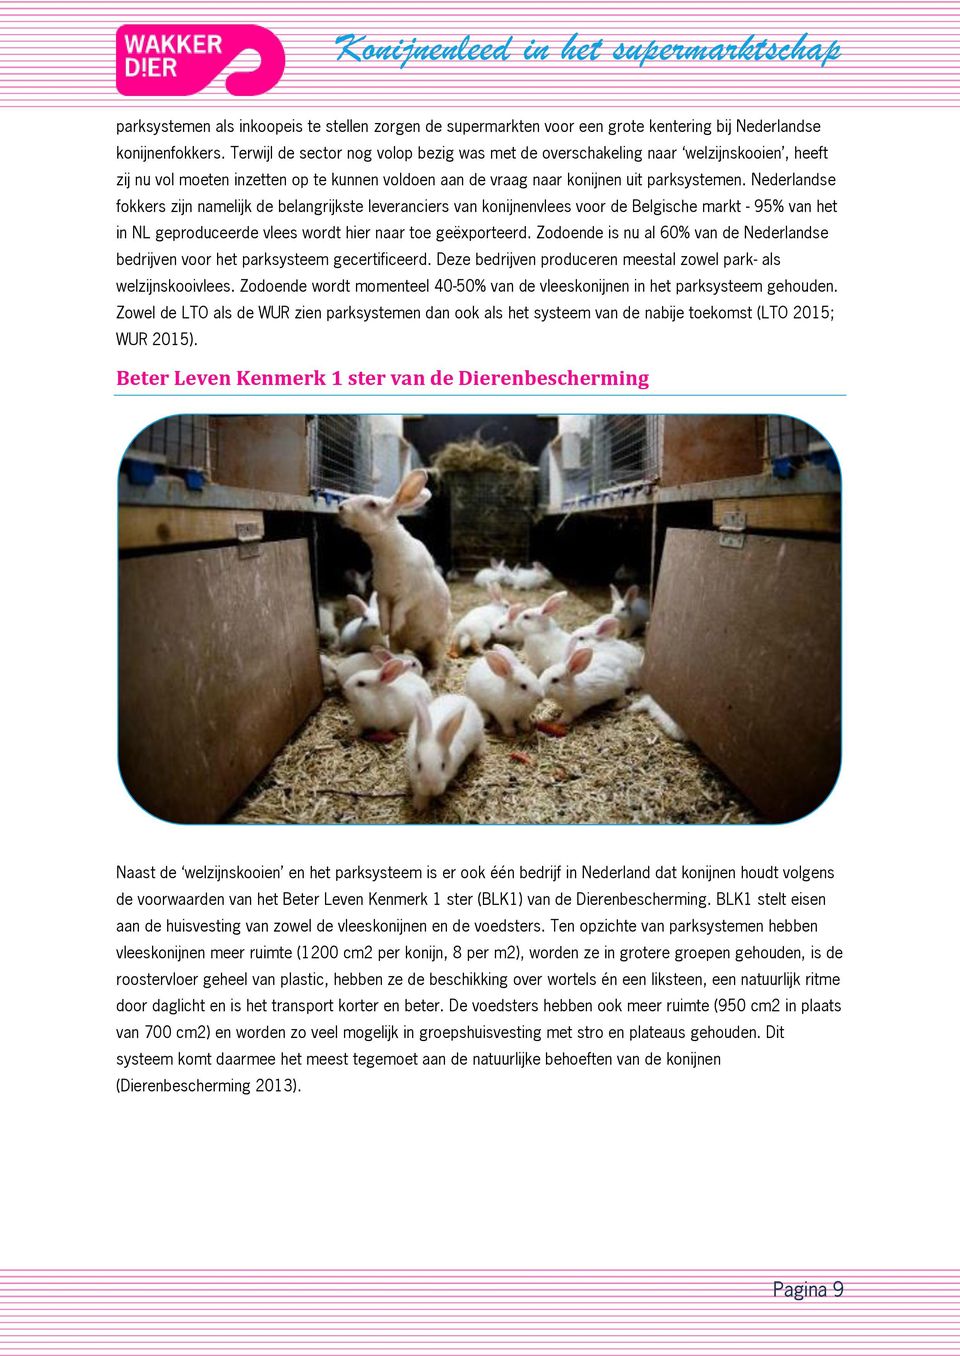 Nederlandse fokkers zijn namelijk de belangrijkste leveranciers van konijnenvlees voor de Belgische markt - 95% van het in NL geproduceerde vlees wordt hier naar toe geëxporteerd.